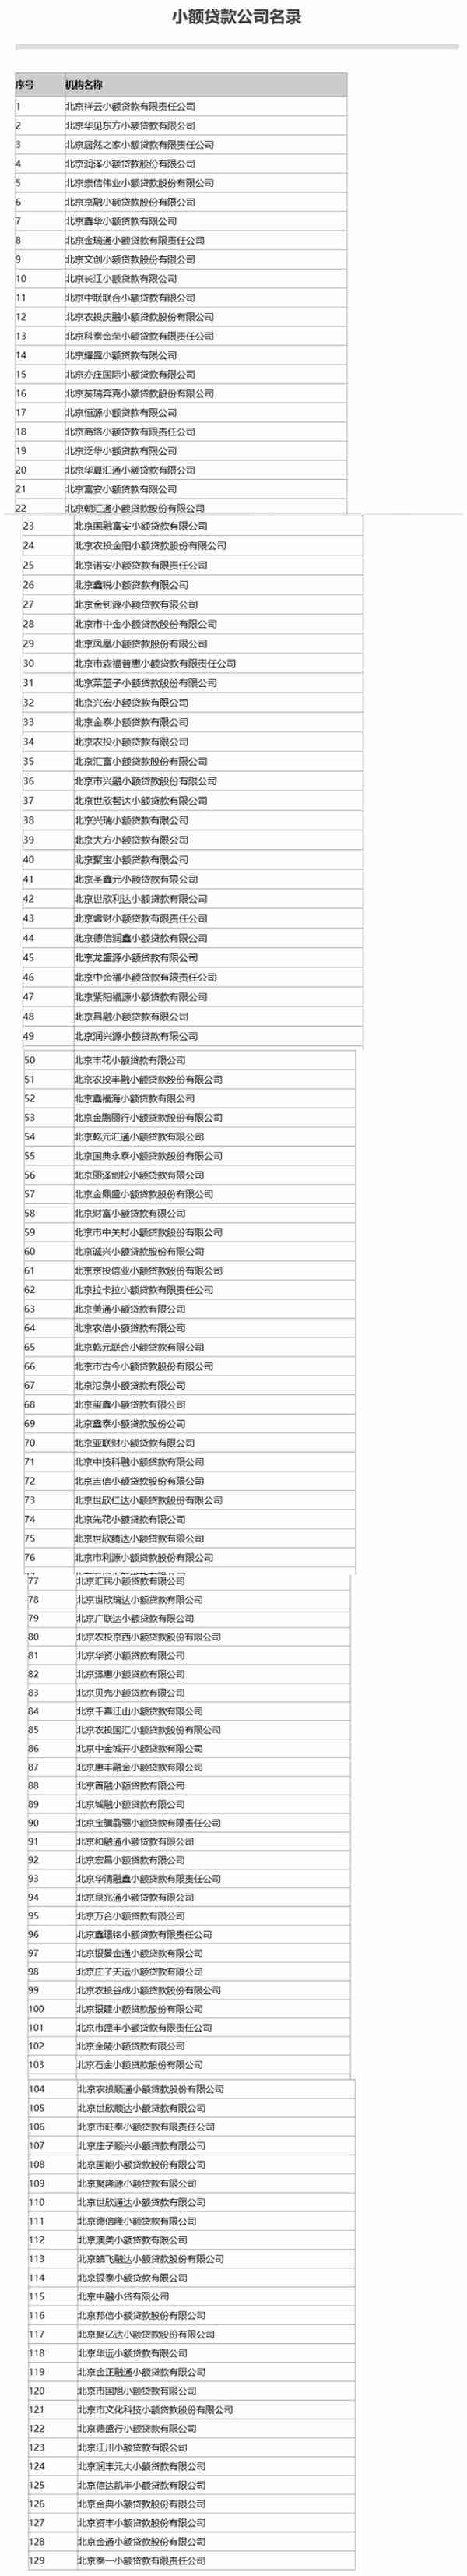 北京公示辖内小贷、融资担保等“7+4”类地方金融组织名录